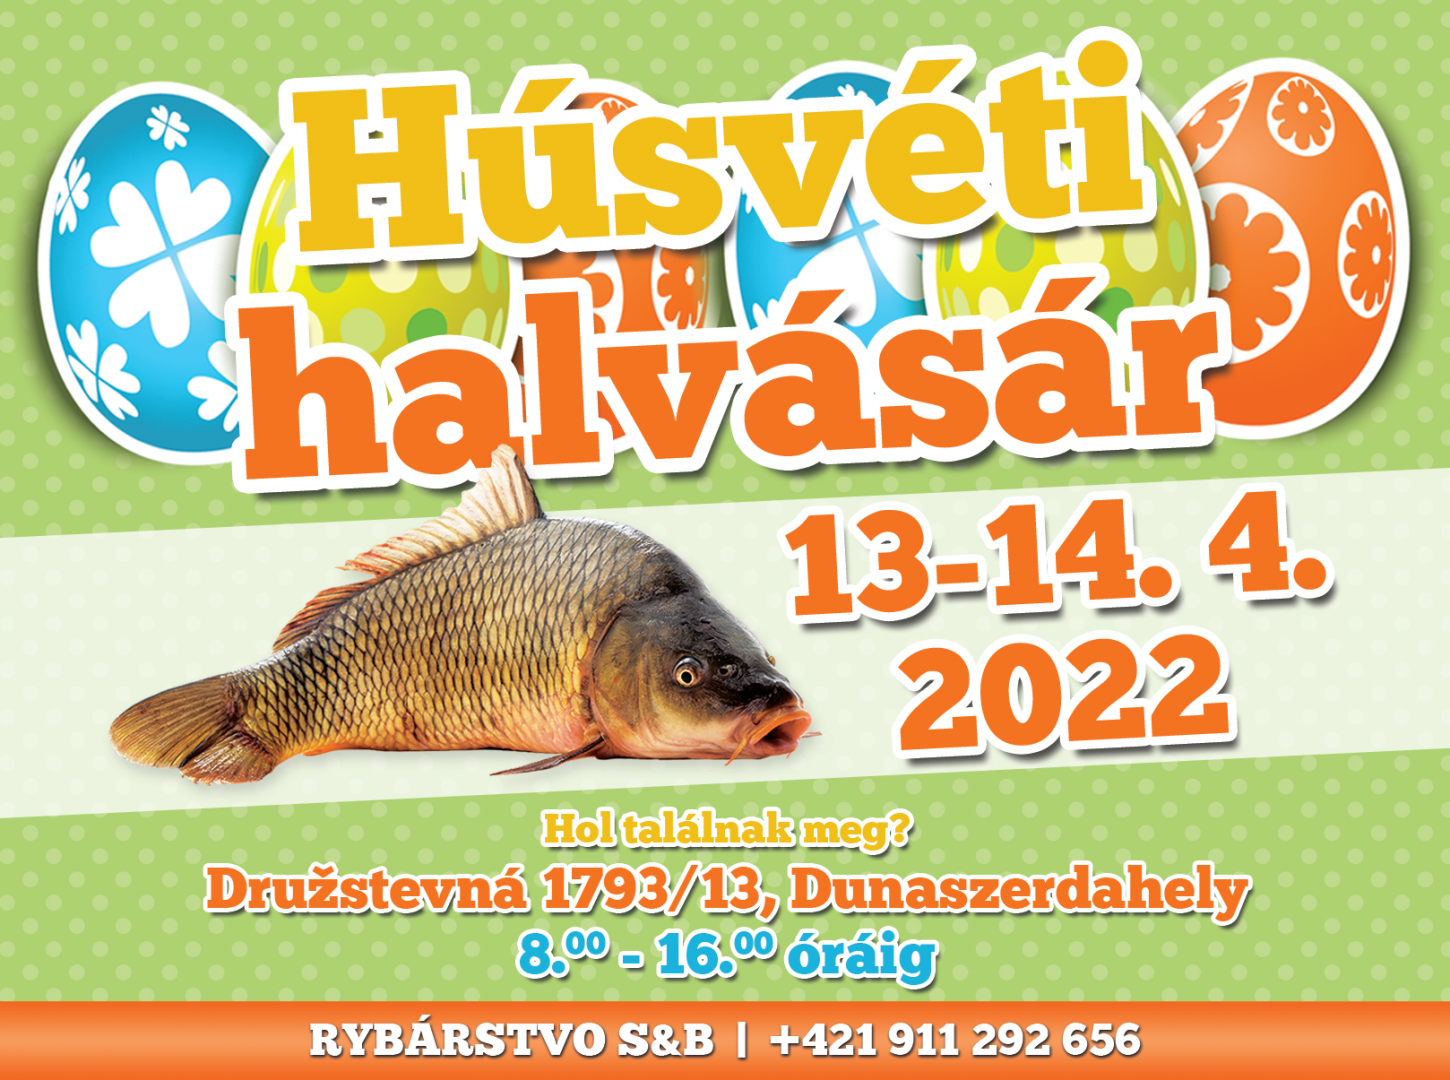 Idén sem maradhat el a húsvéti halvásár Dunaszerdahelyen